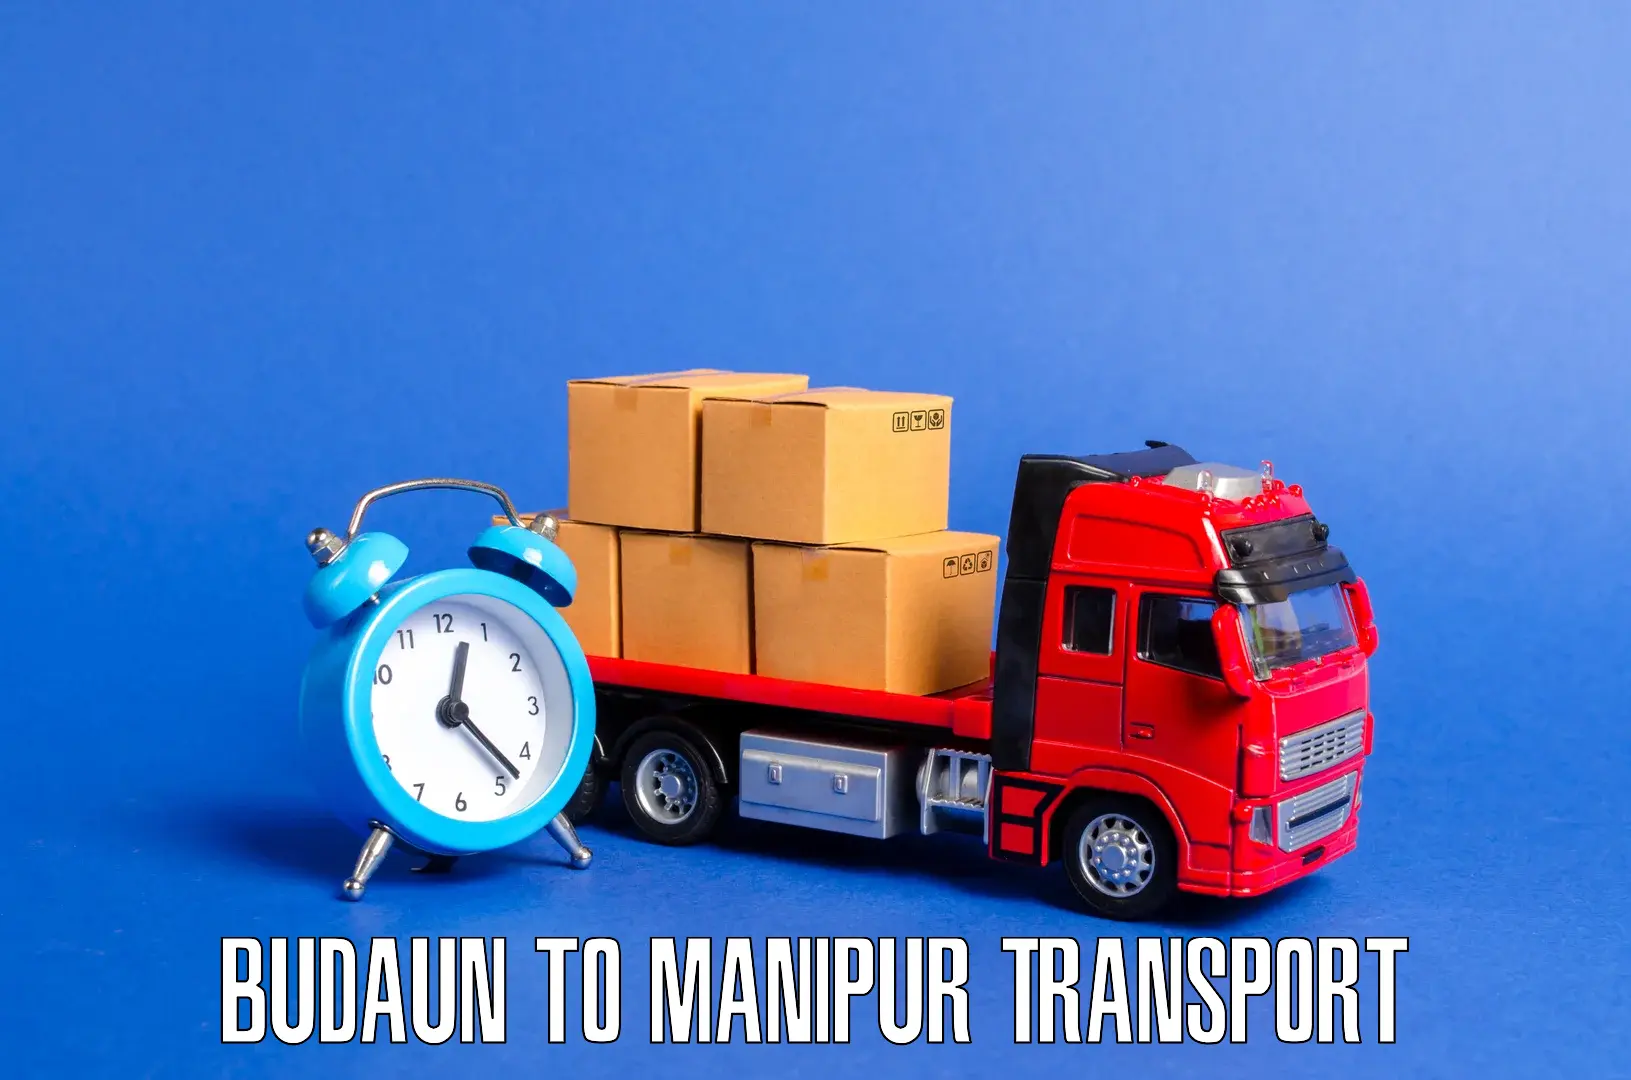 Container transport service Budaun to Jiribam